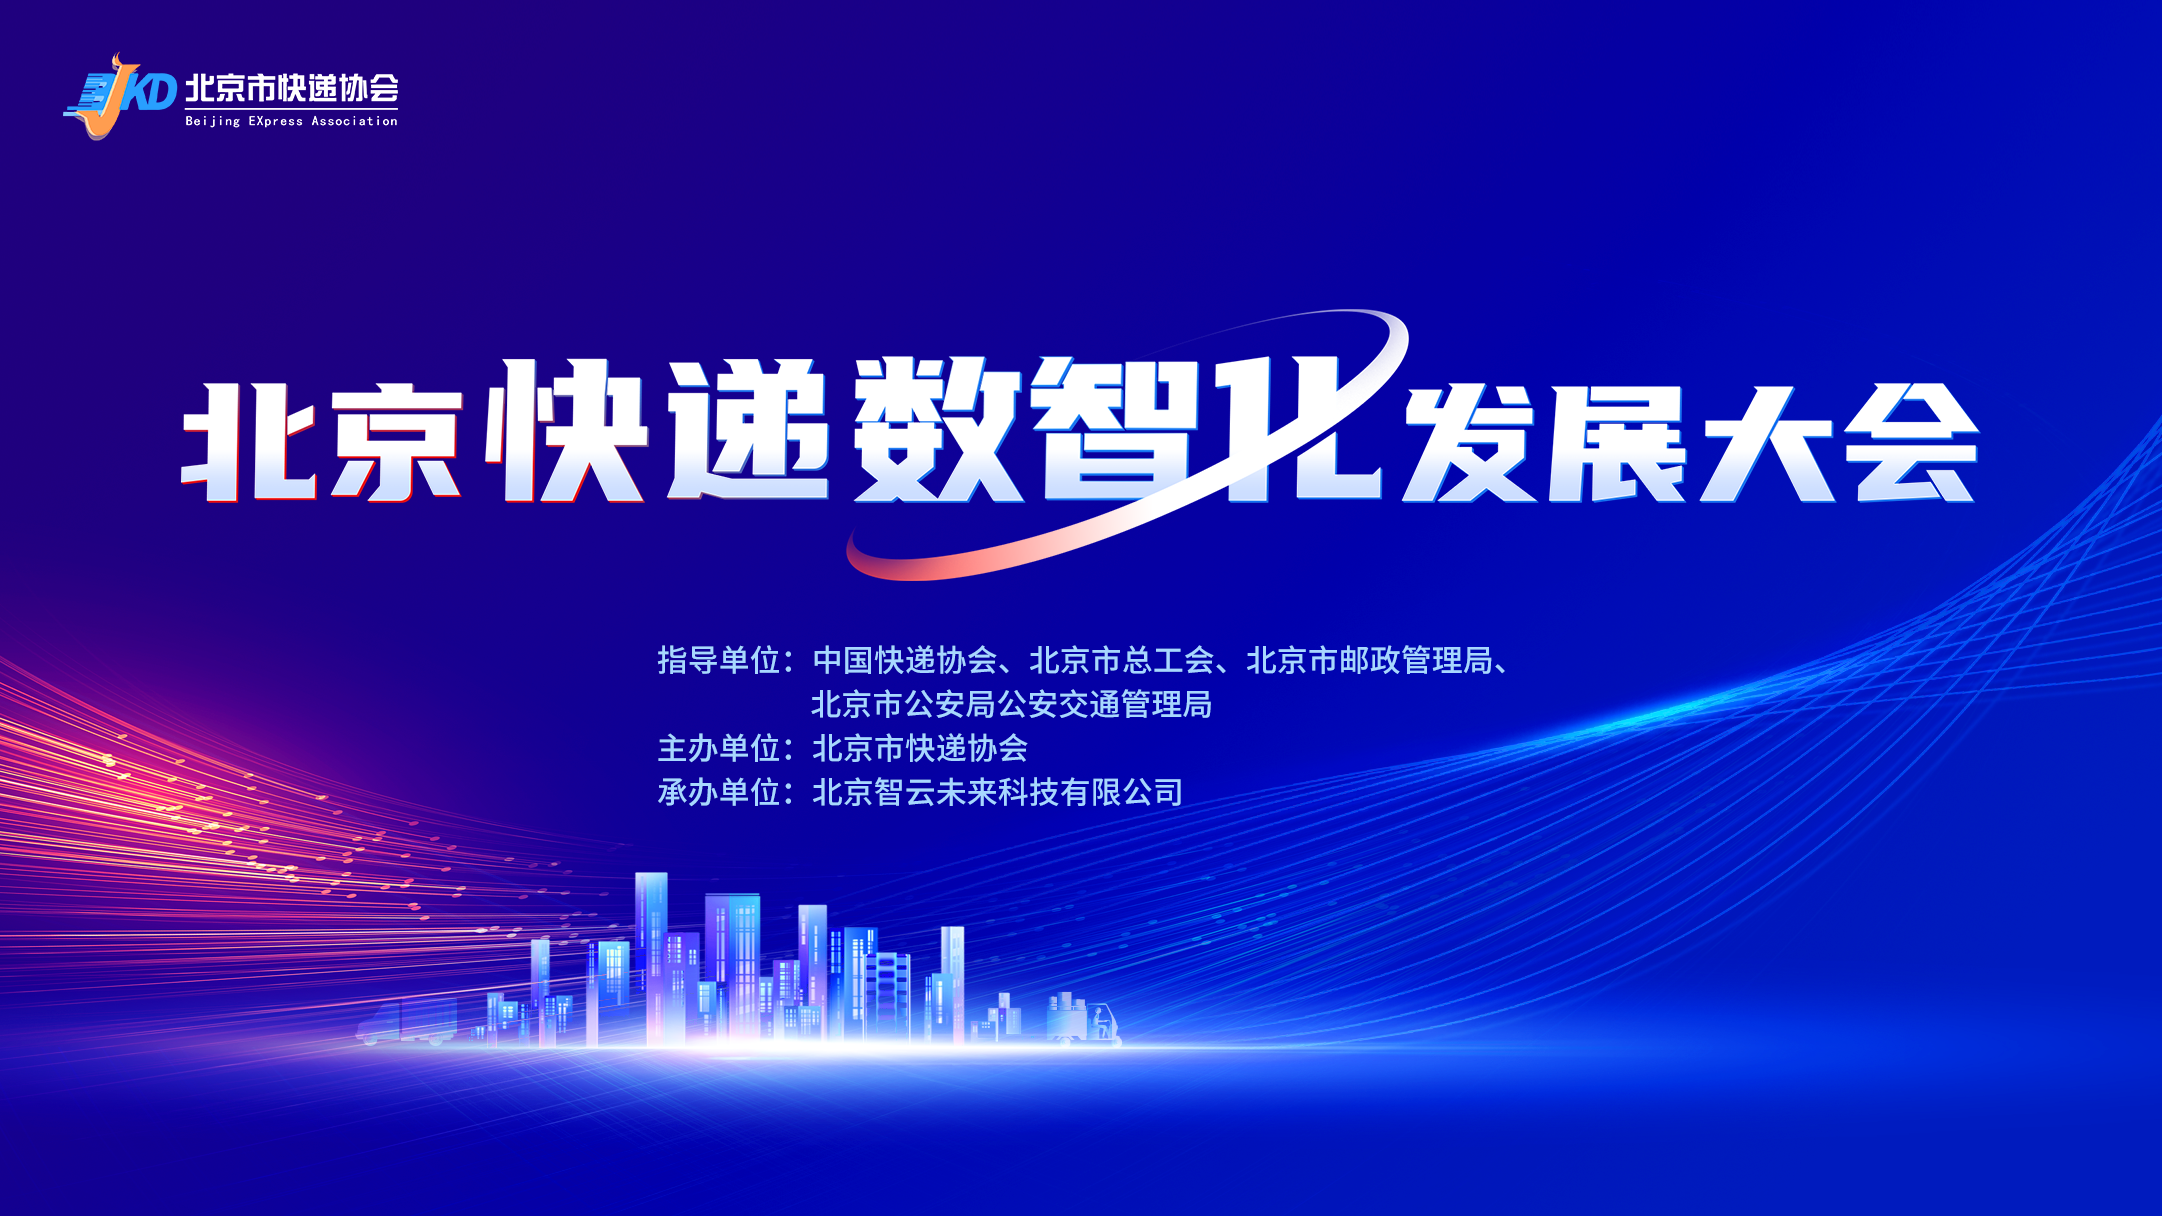 澳门官方游戏网站(中国)有限公司官网成功举办北京快递数智化发展大会